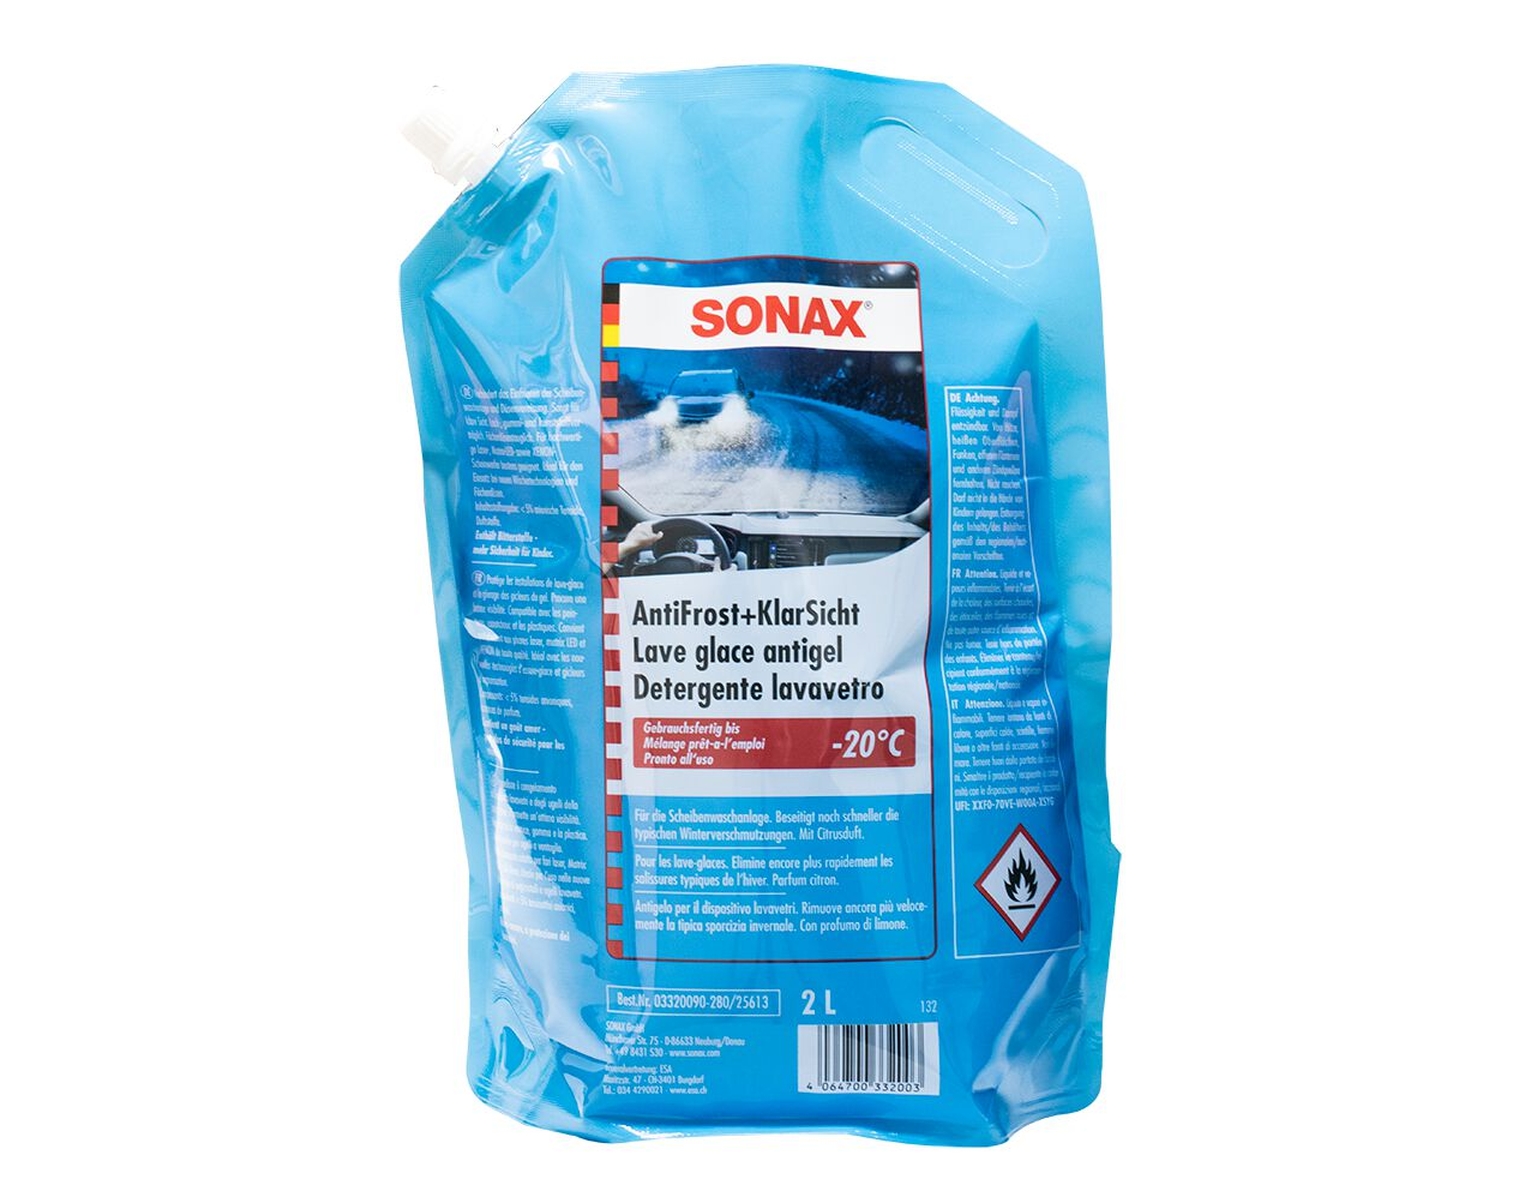 SONAX Antifrost und KlarSicht Winterfertigmischung, -20 °C, Beutel à 2 Liter